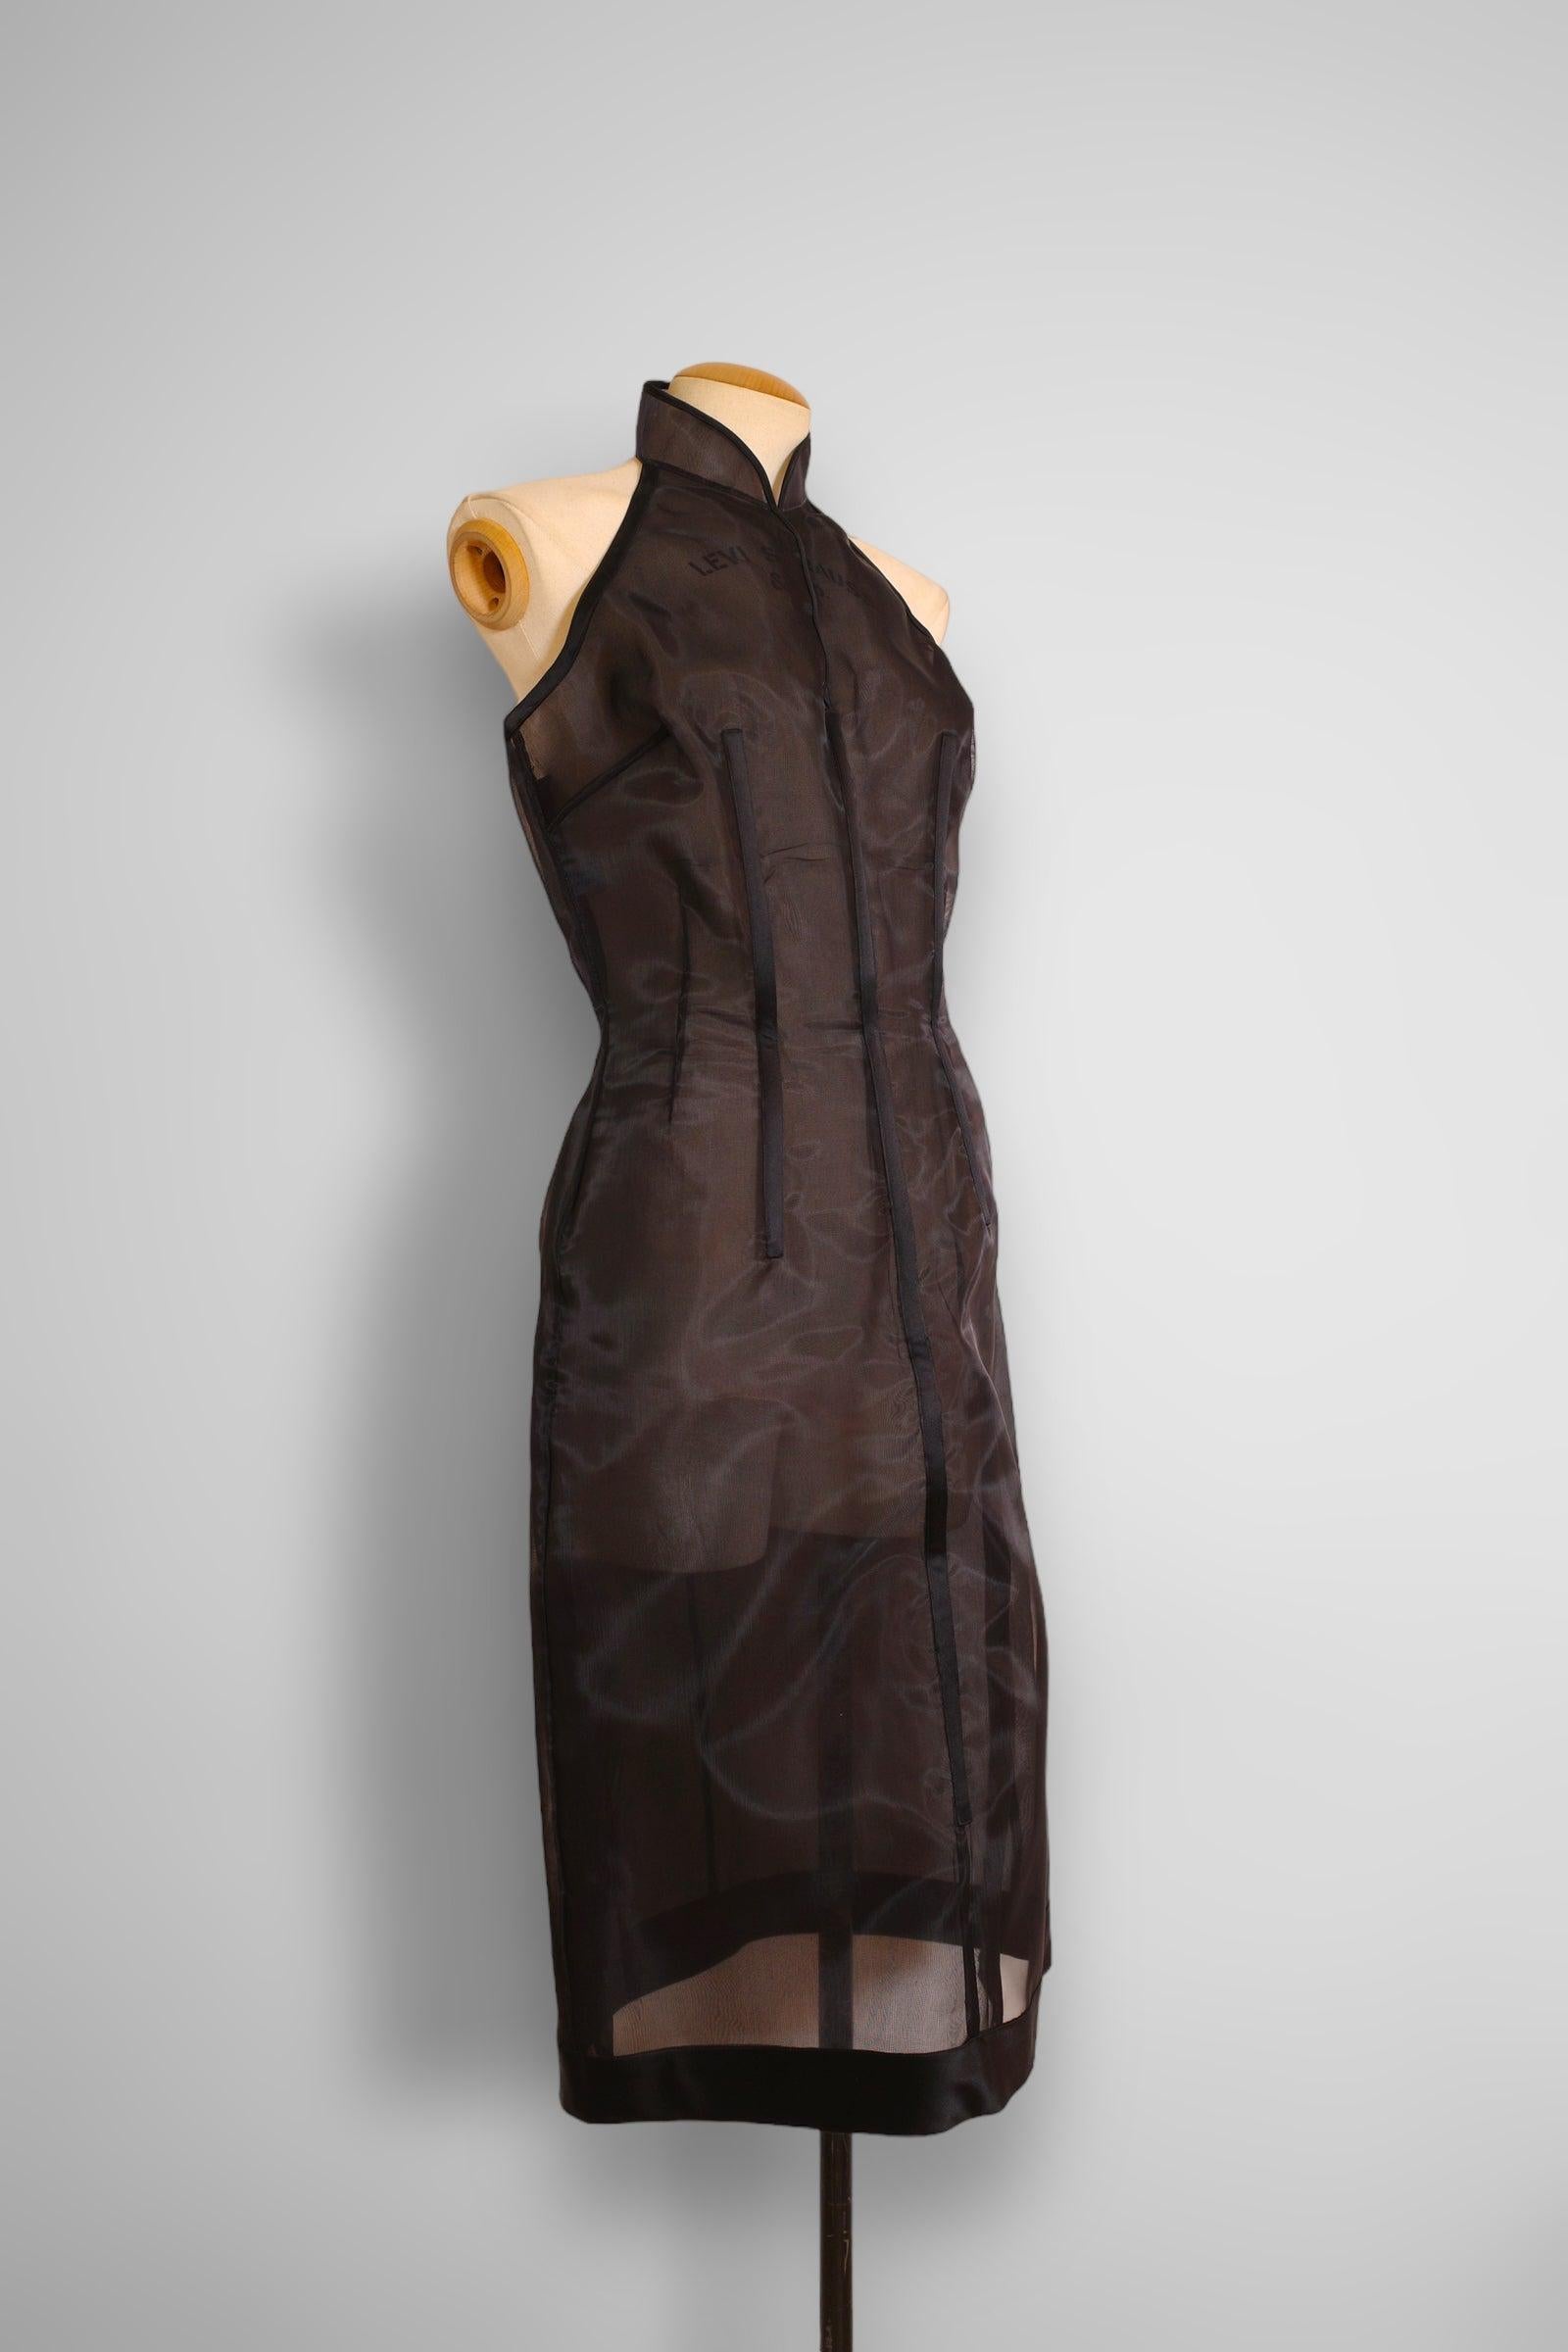 Robe dos nu vintage de la collection 1995 de Prada. La robe est en nylon et entièrement désossée sur tout le pourtour. 

Taille 44, (L)

Condition : 8/10, très bon état d'usage, les os du dos dépassent légèrement mais c'est minime. Les os sont pliés